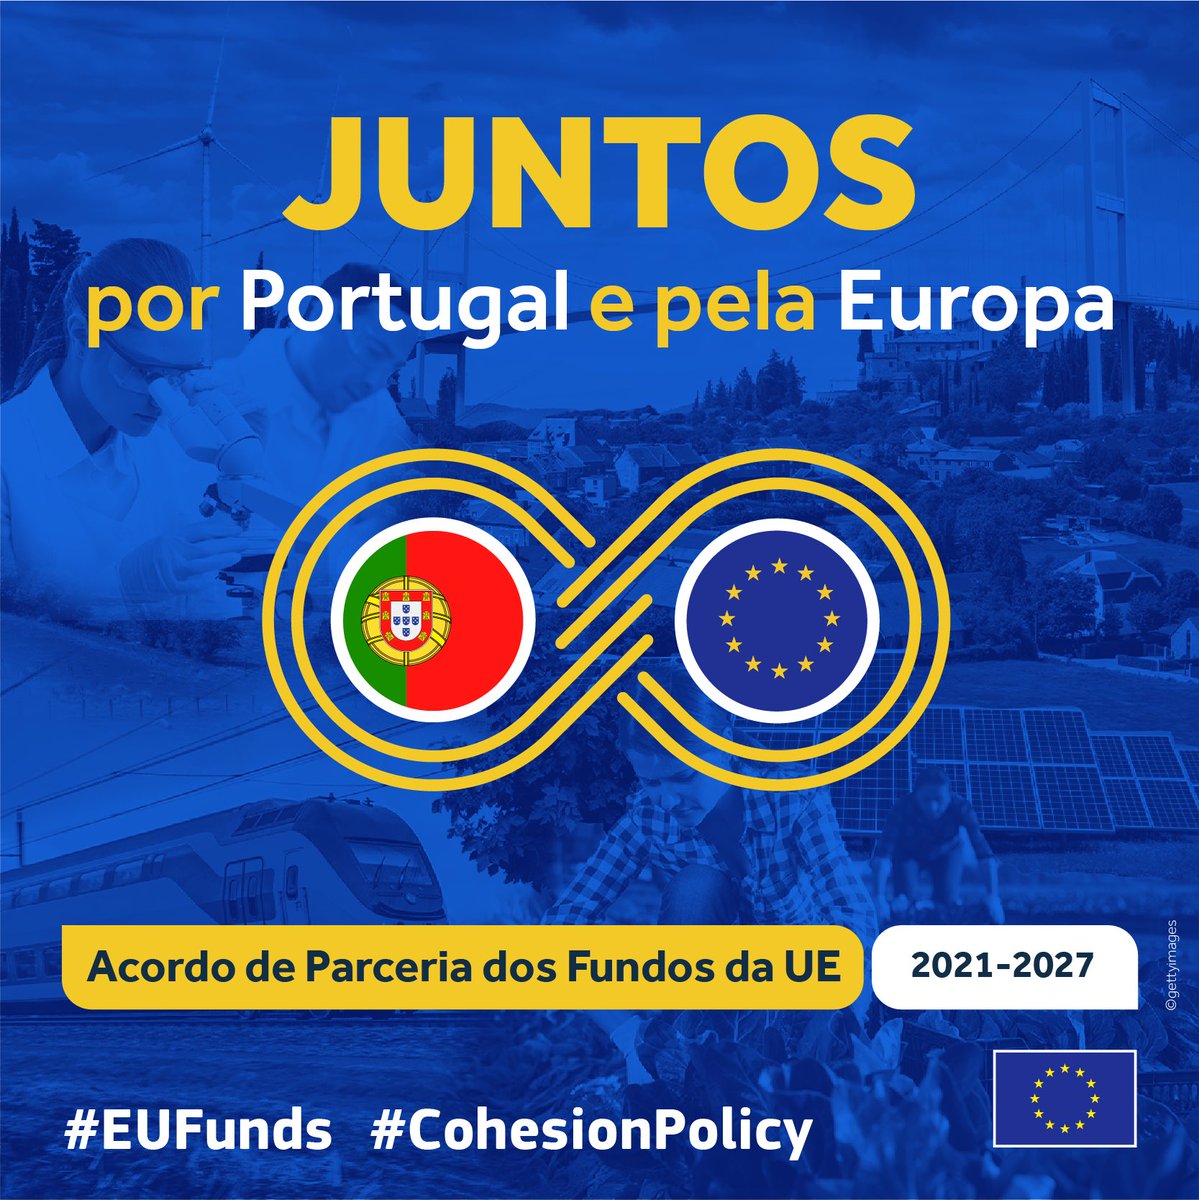 É com grande satisfação que me desloco hoje ao Fundão 🇵🇹 para assinar o Acordo de Parceria entre Portugal e a Comissão Europeia para o investimento de 23 mil milhões de € de fundos estruturais e de coesão 🇪🇺 para 2021-2027 @antoniocostapm @mpresidencia_pt Siga em direto 👇